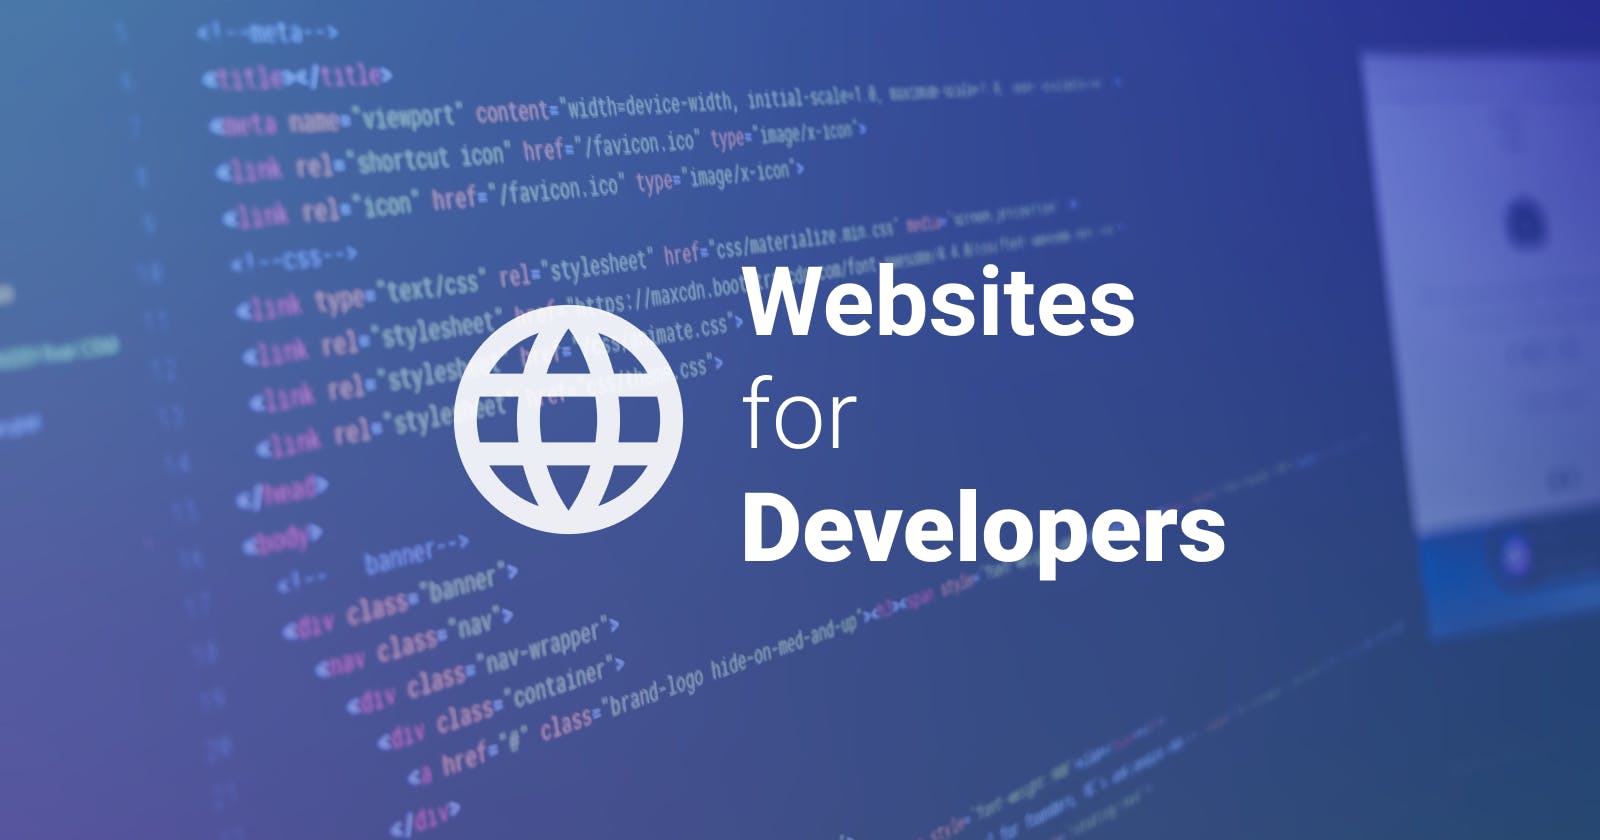 Some Useful Websites for Web Developers